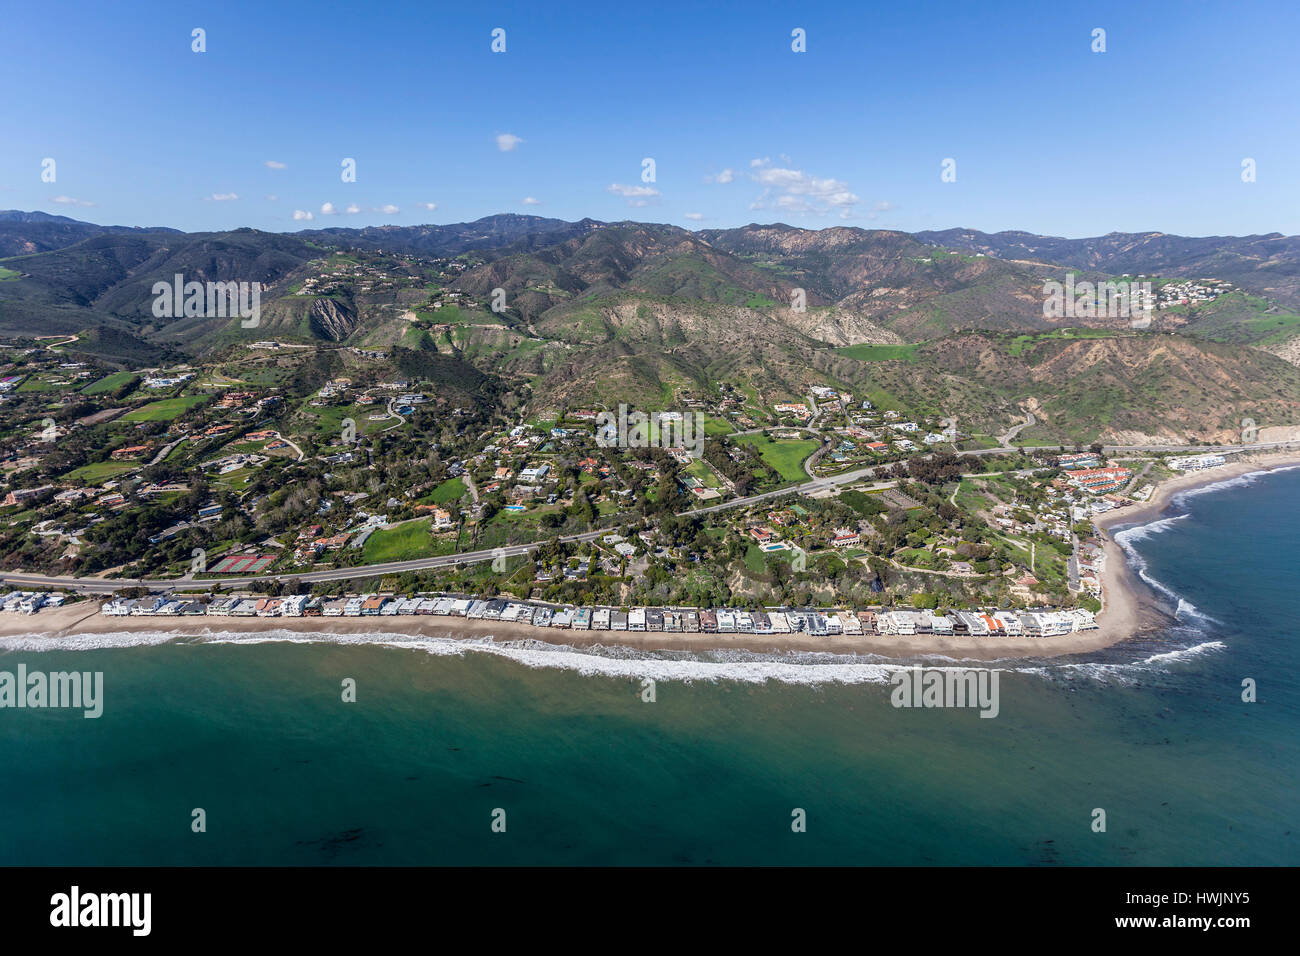 Vue aérienne de plages de Malibu, les maisons et les montagnes de Santa Monica en Californie du Sud. Banque D'Images